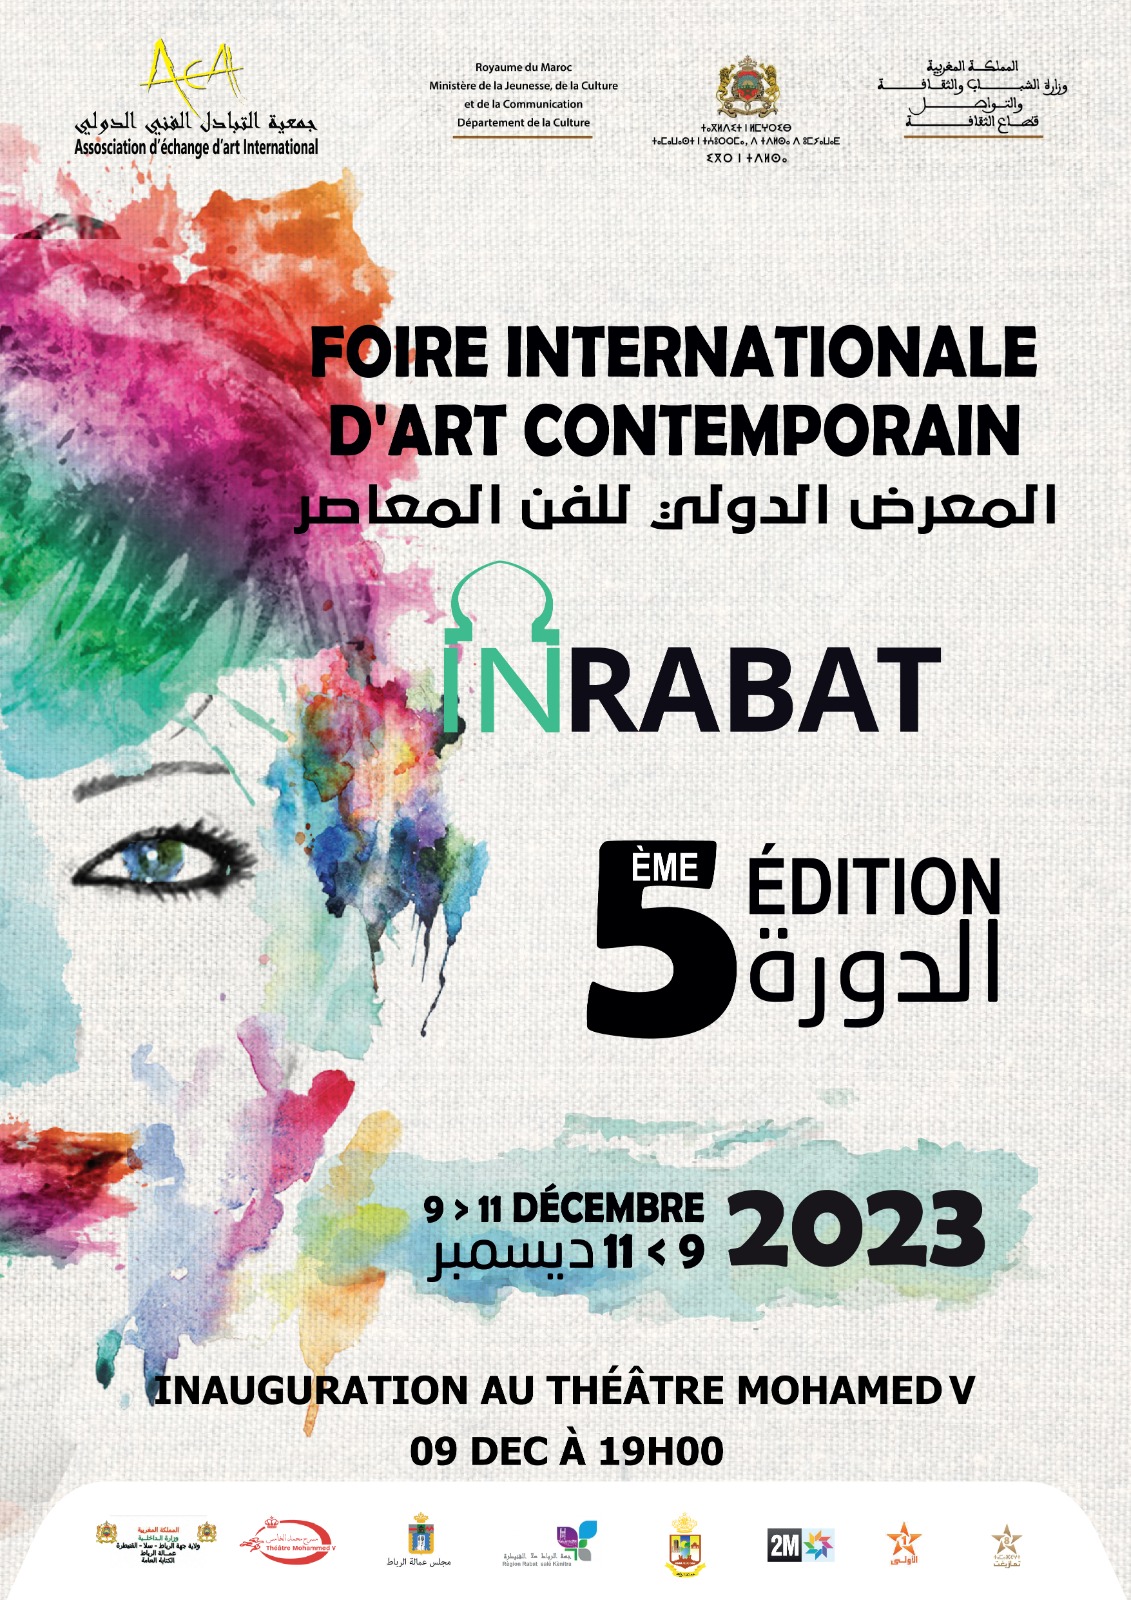 La quinta edición de la feria internacional de arte contemporáneo del 9 al 11 de diciembre en Rabat